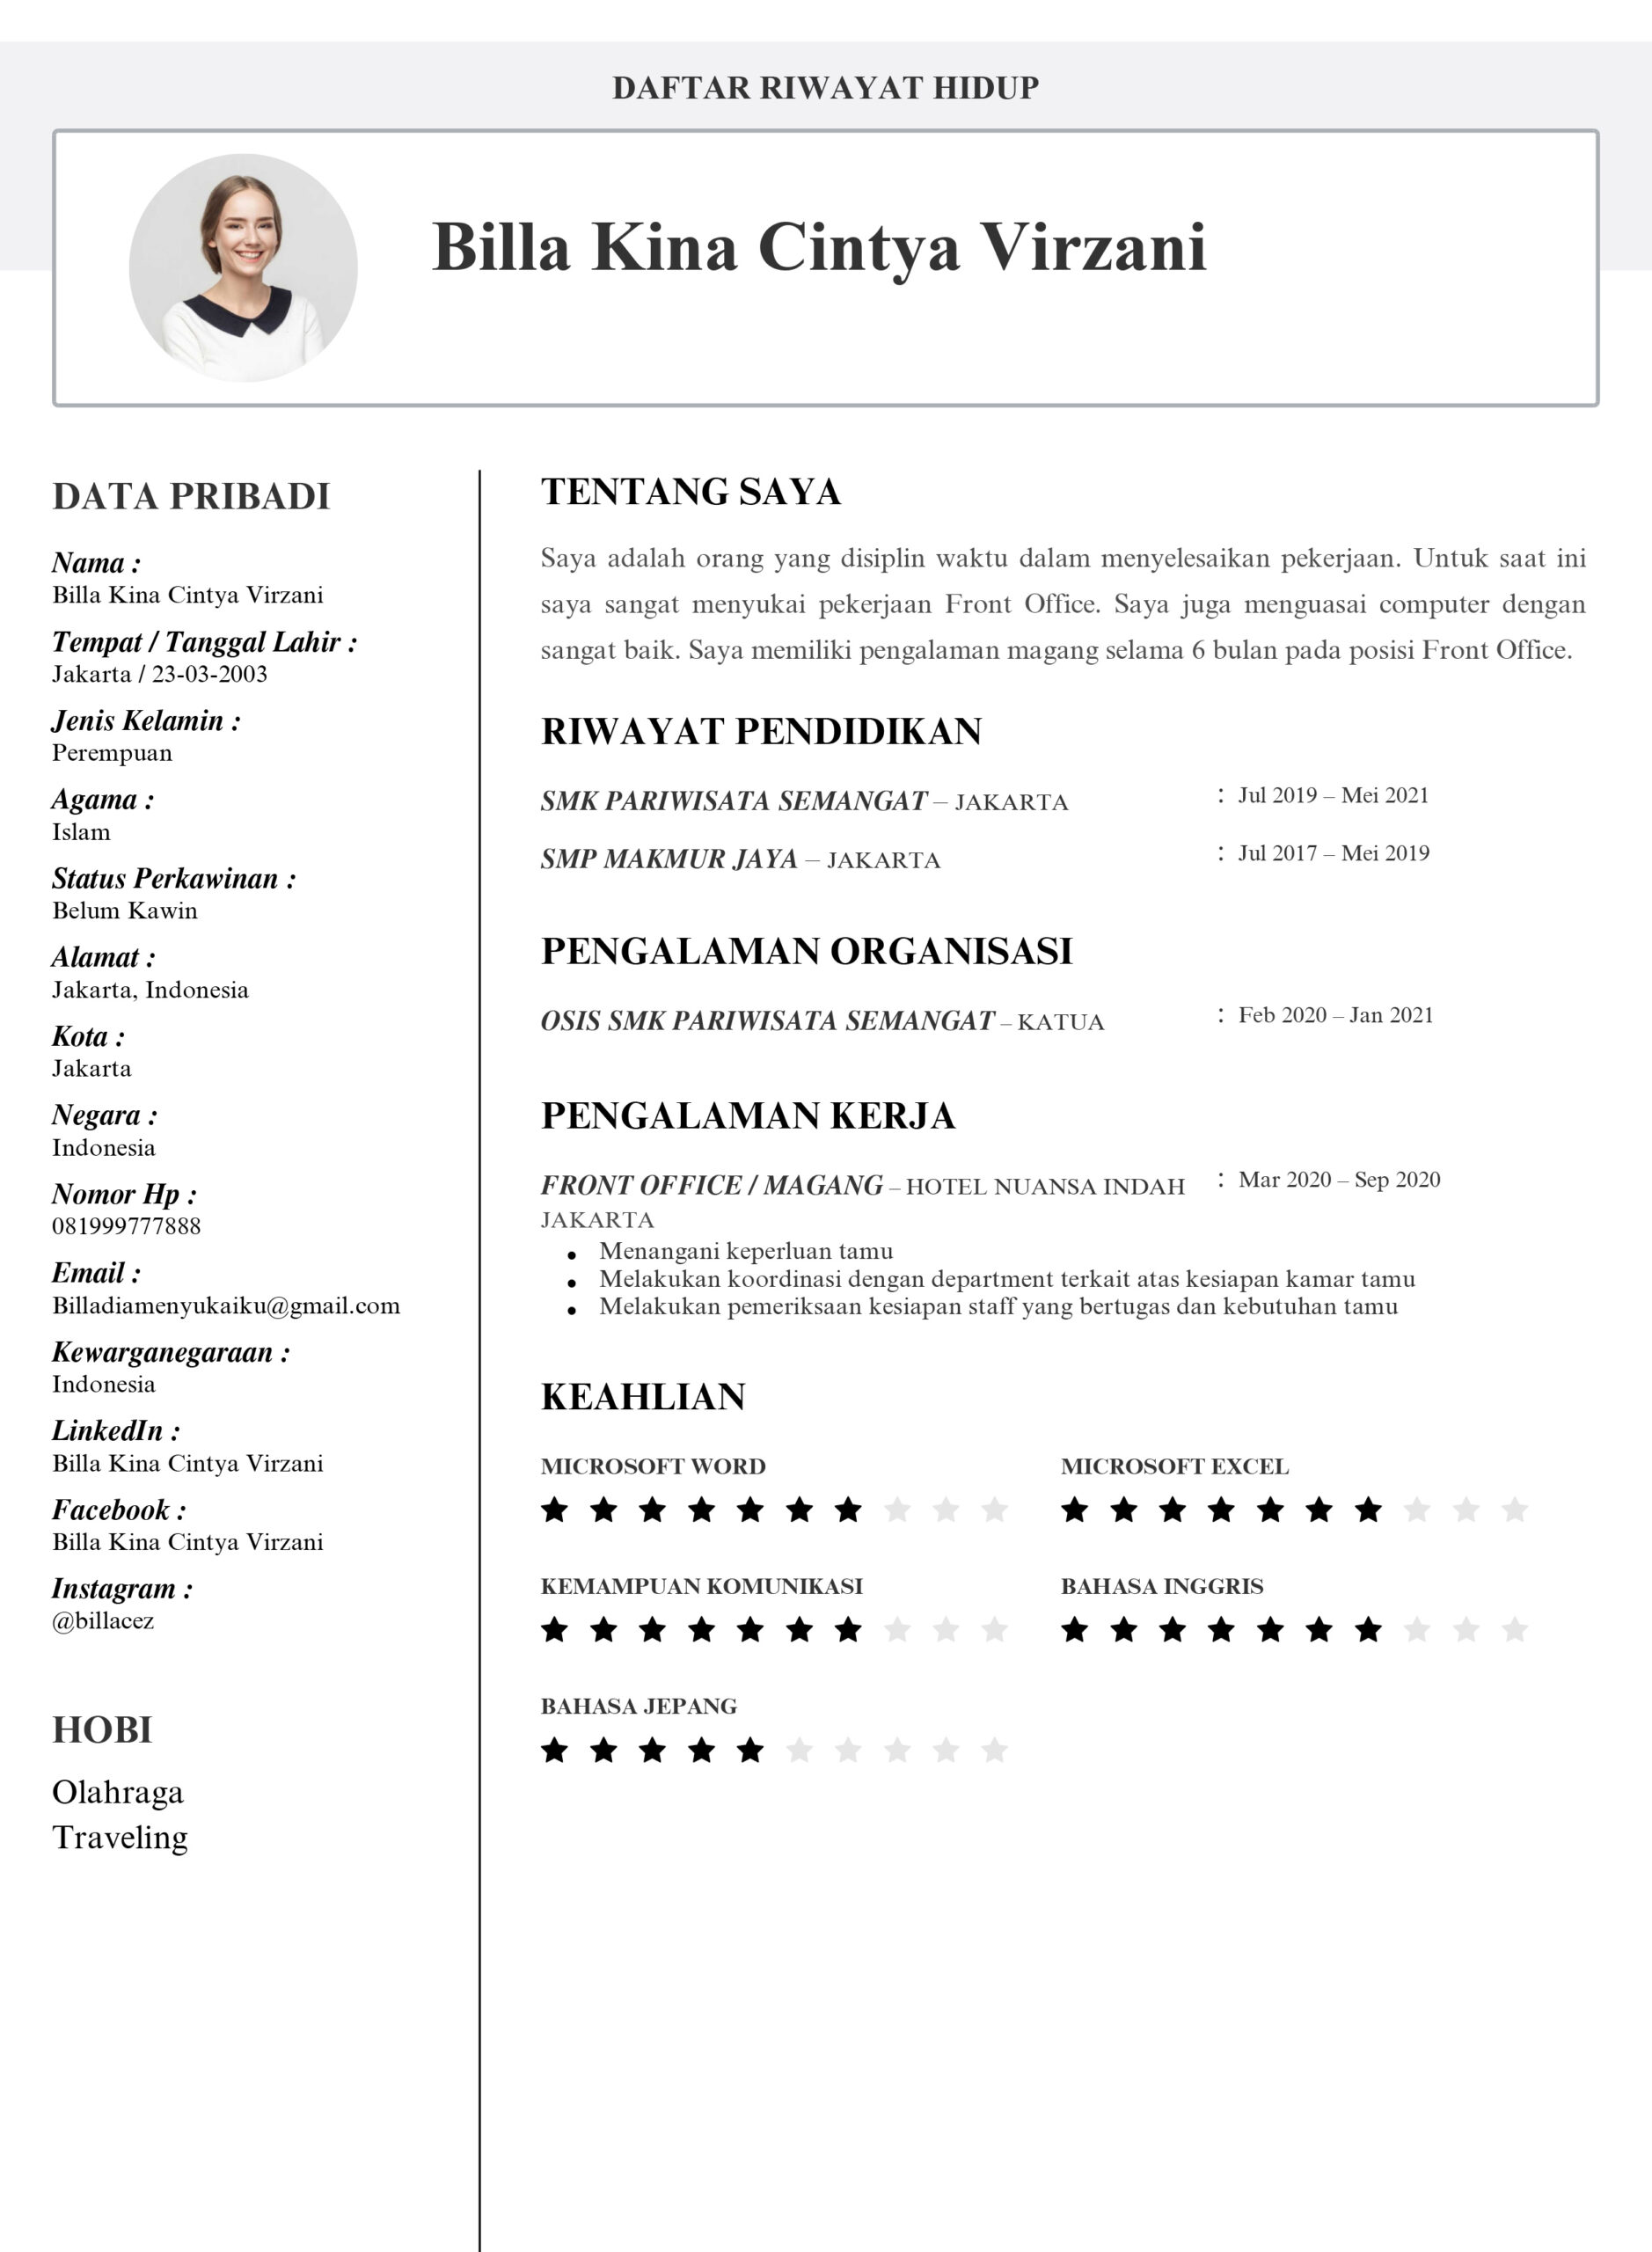 Contoh CV Siswa SMK Pariwisata